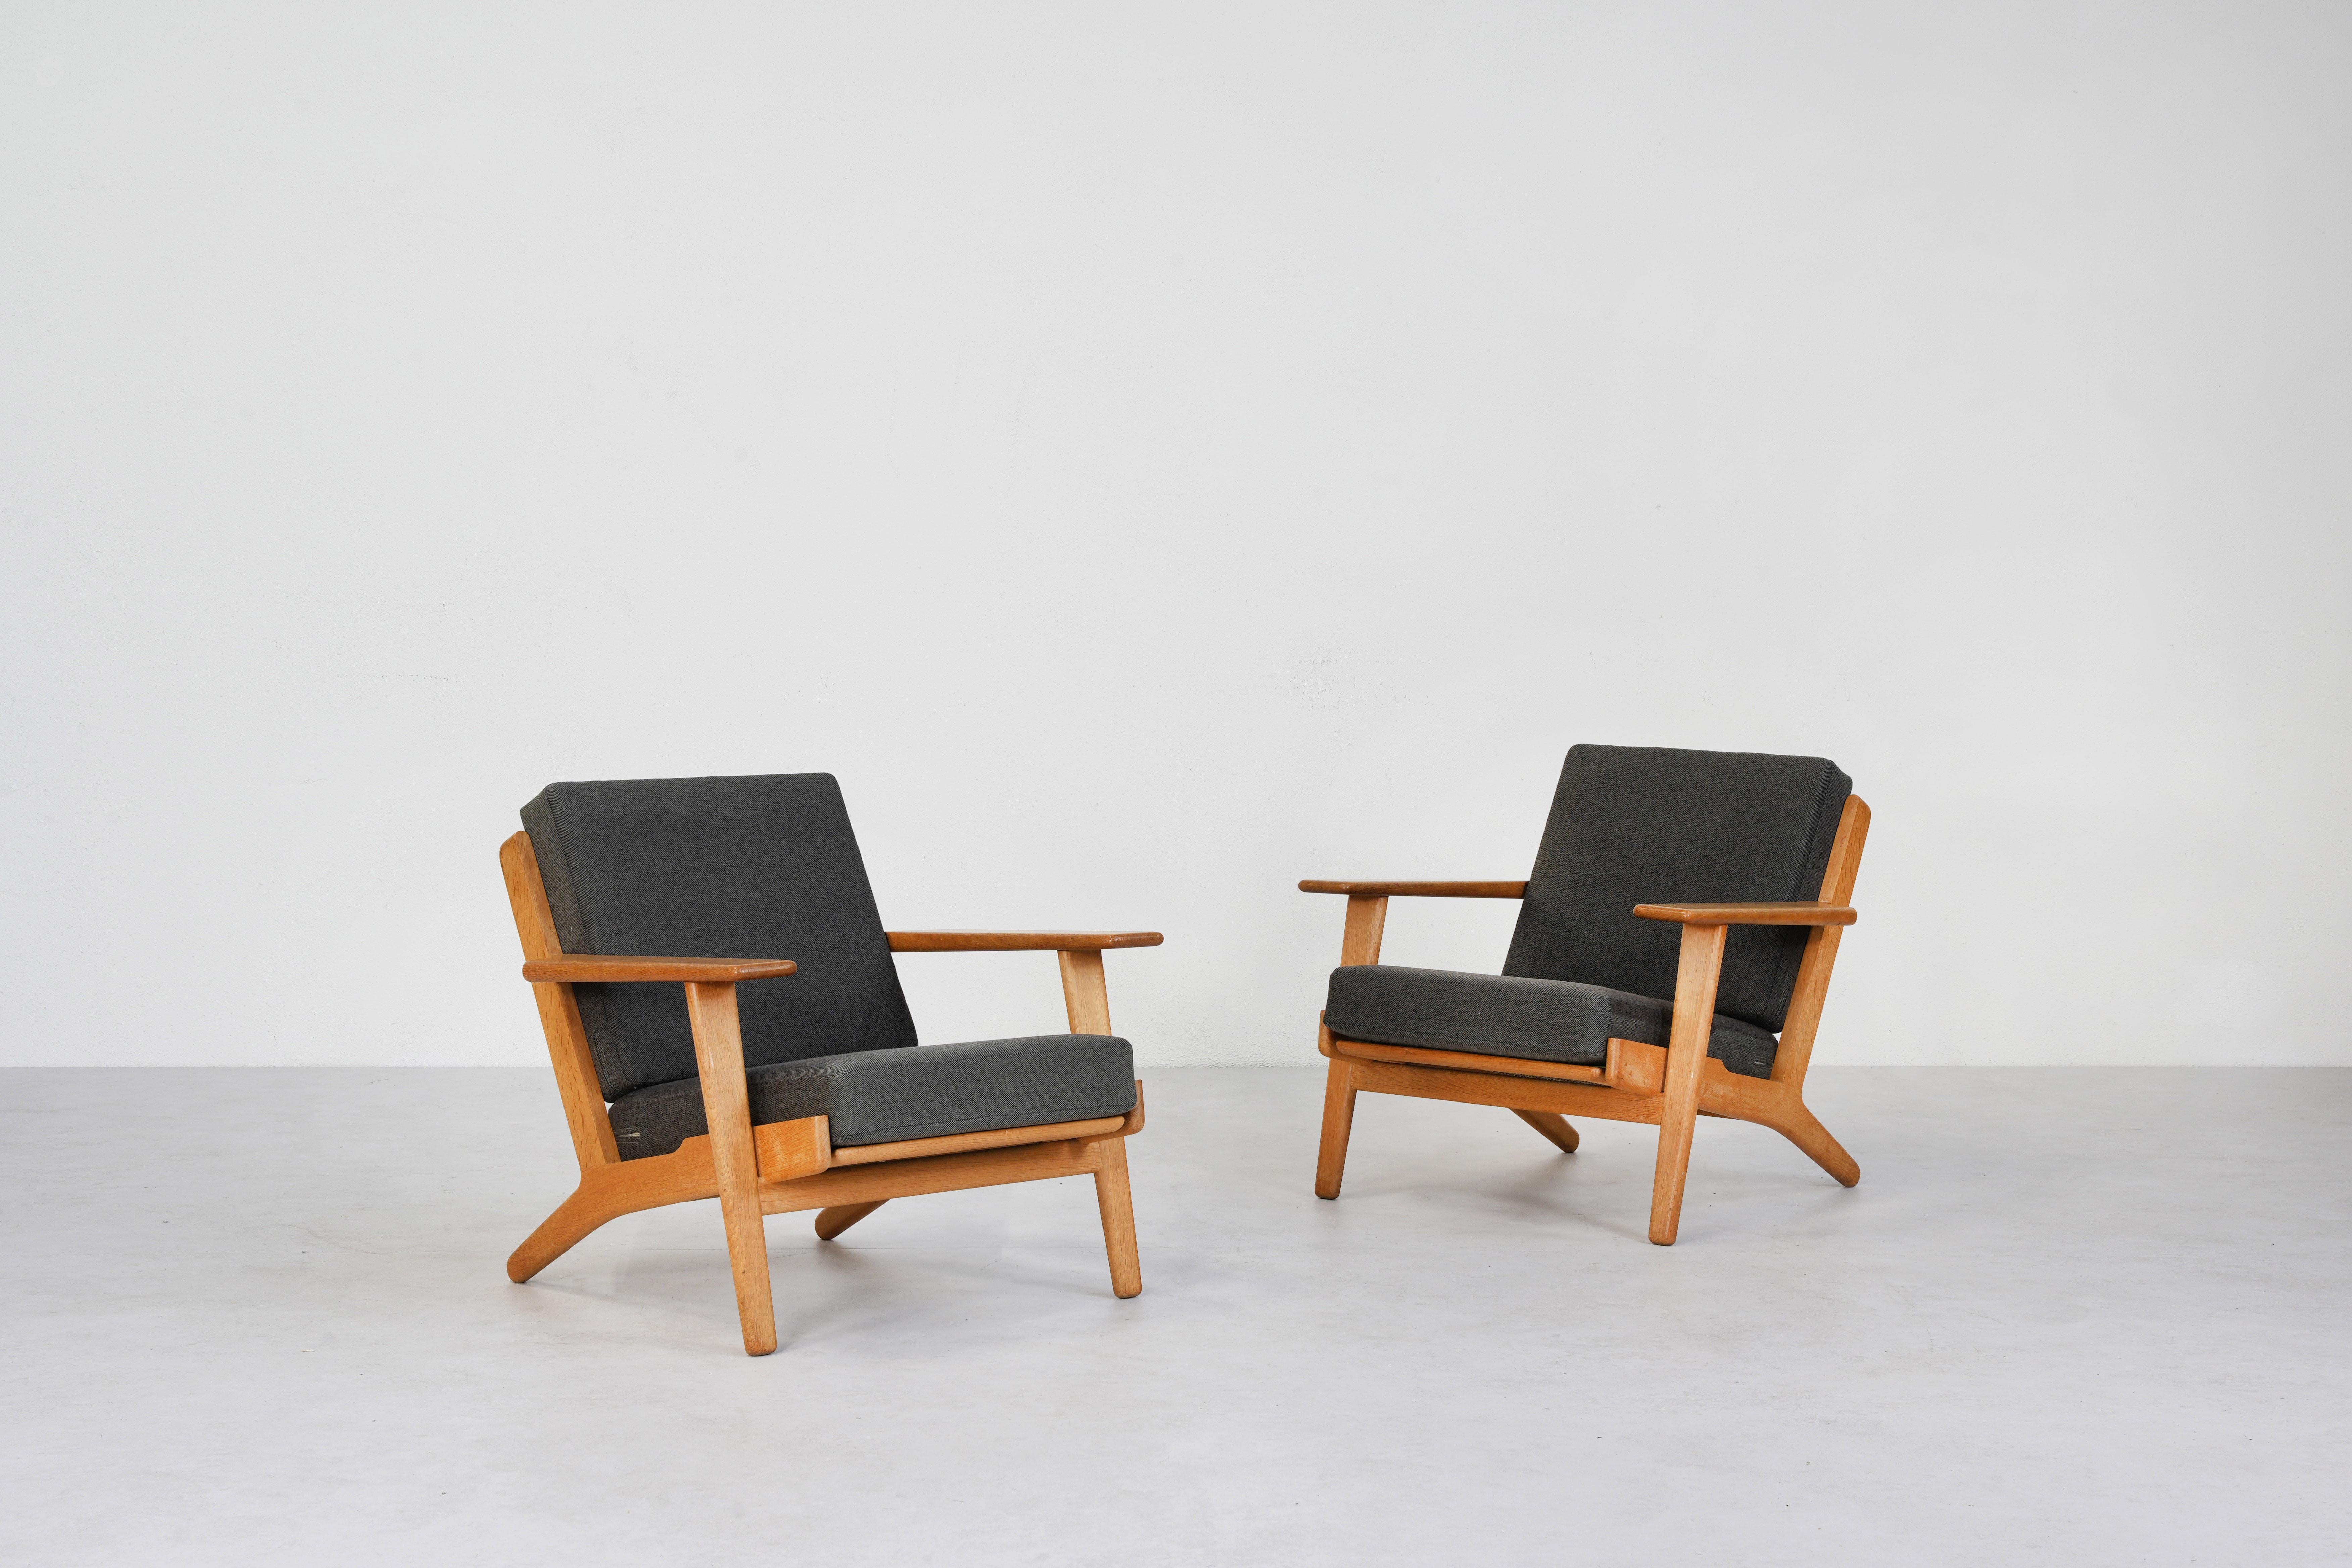 Magnifique paire de chaises Lounge Easy Chairs conçue par Hans J. Wegner pour GETAMA GE 290, fabriquée au Danemark. Ces chaises sont en excellent état. Le cadre en bois de chêne a pris une belle patine au fil du temps. Les coussins, bien qu'encore